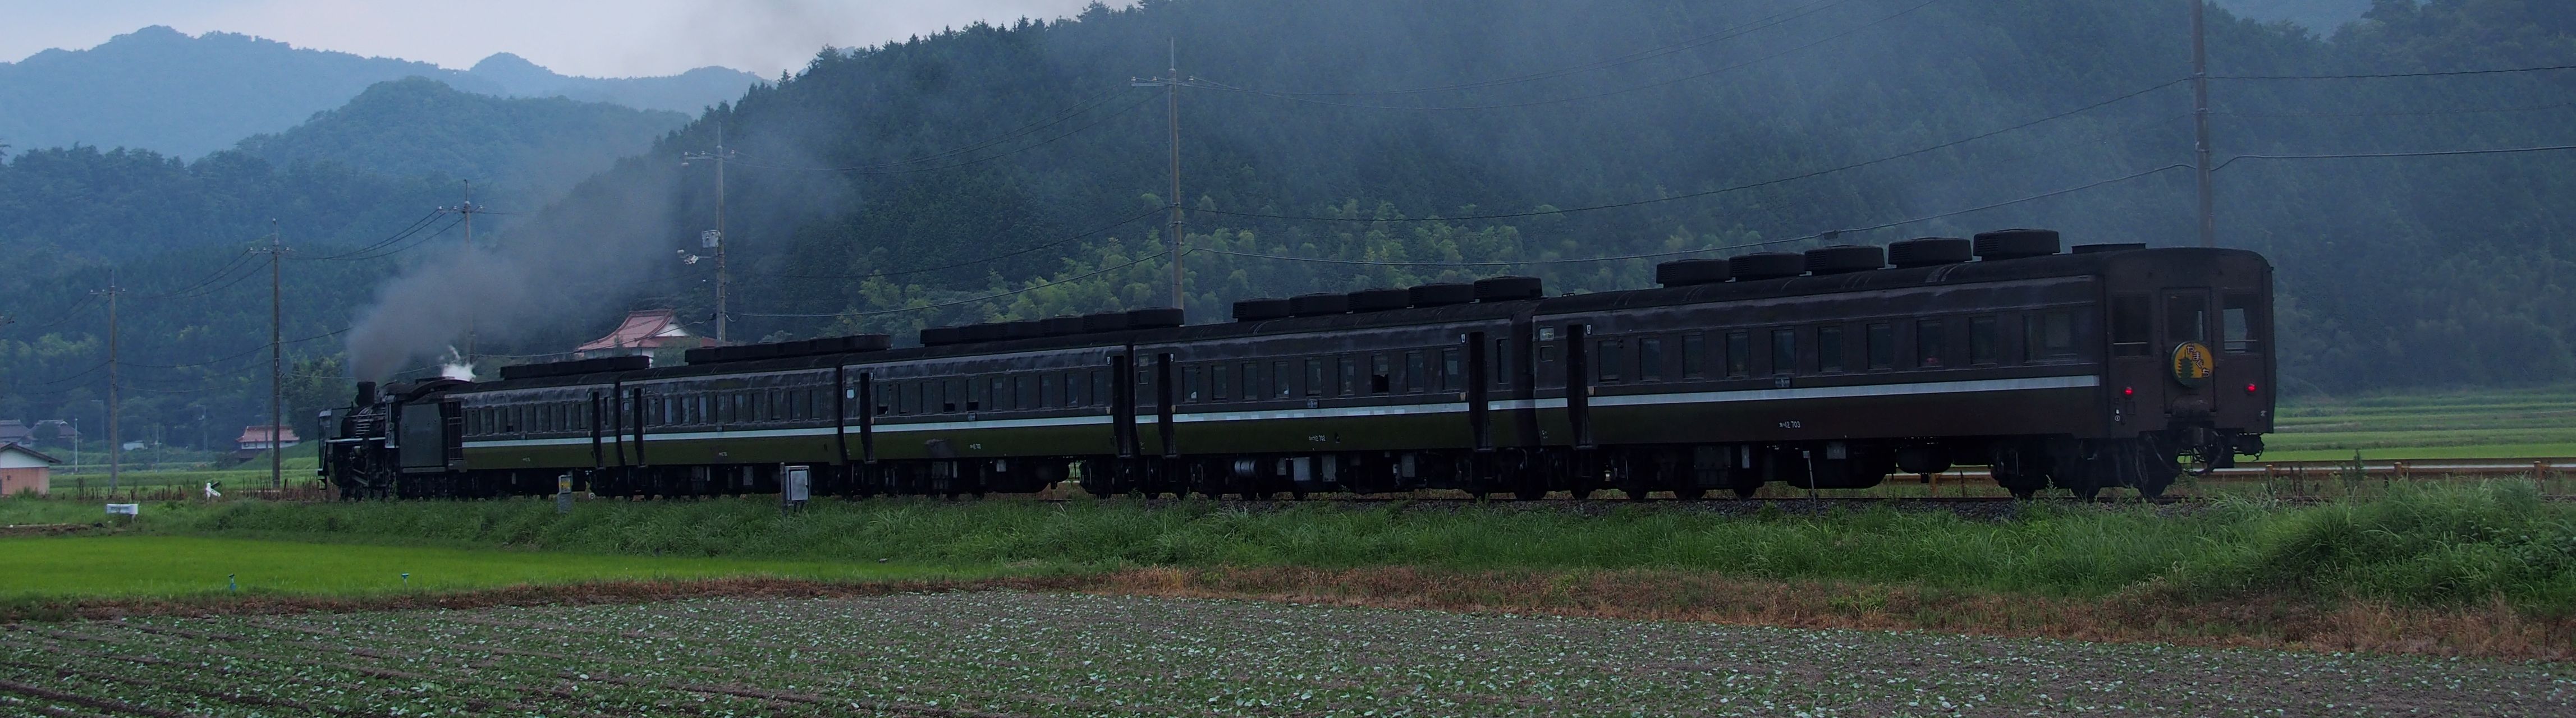 片山を行く蒸気機関車